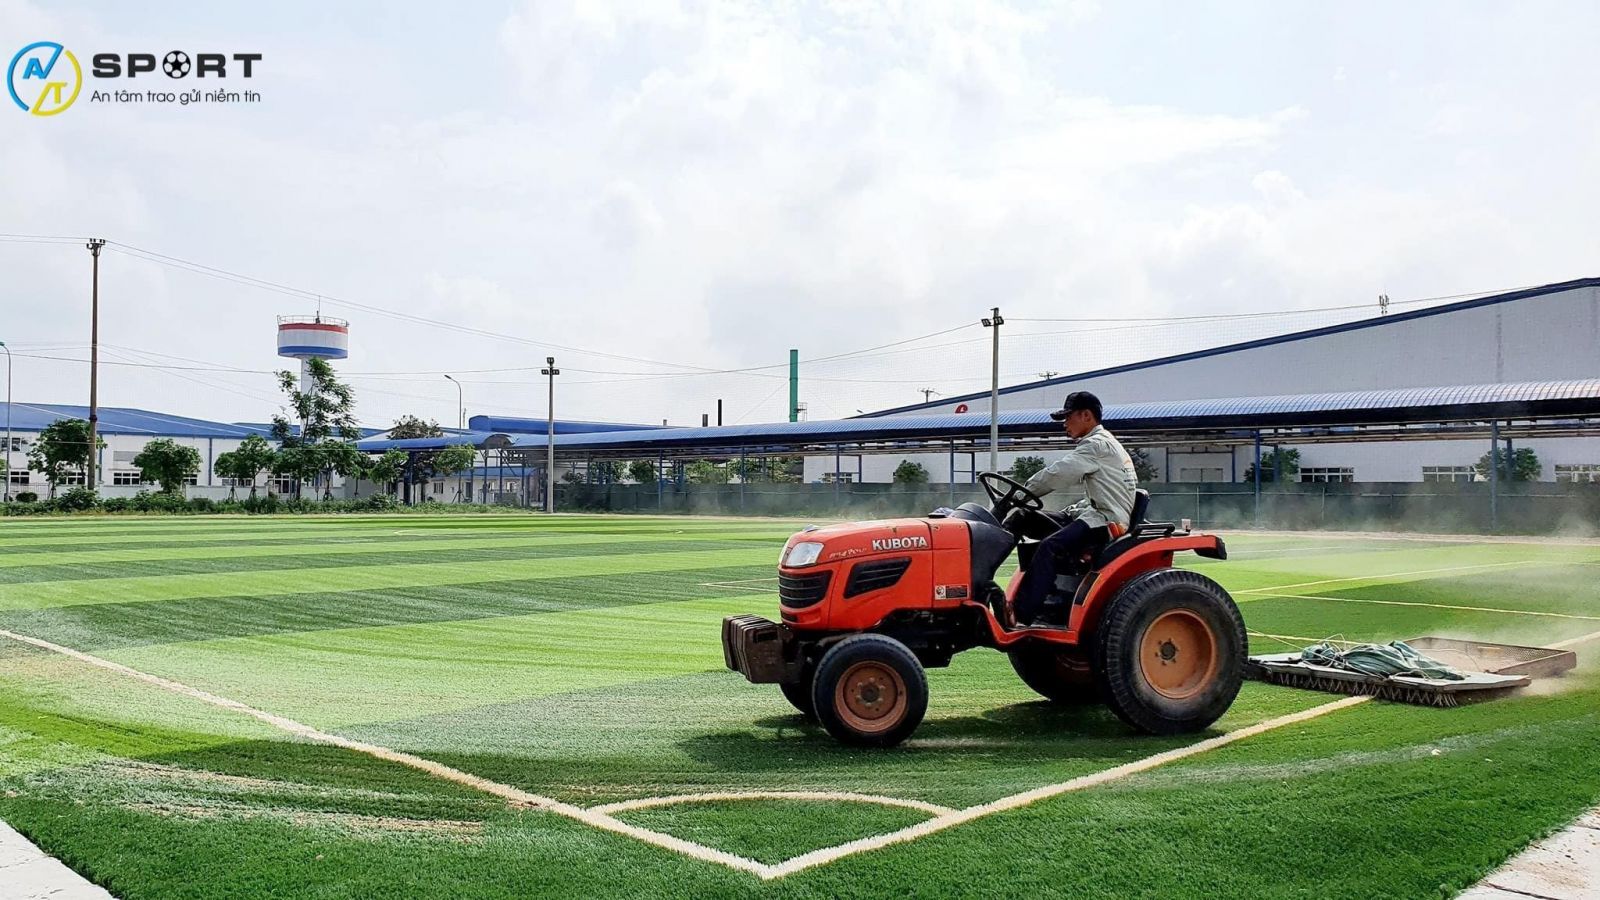 Thi công cỏ nhân tạo sân bóng tại Lạng Sơn